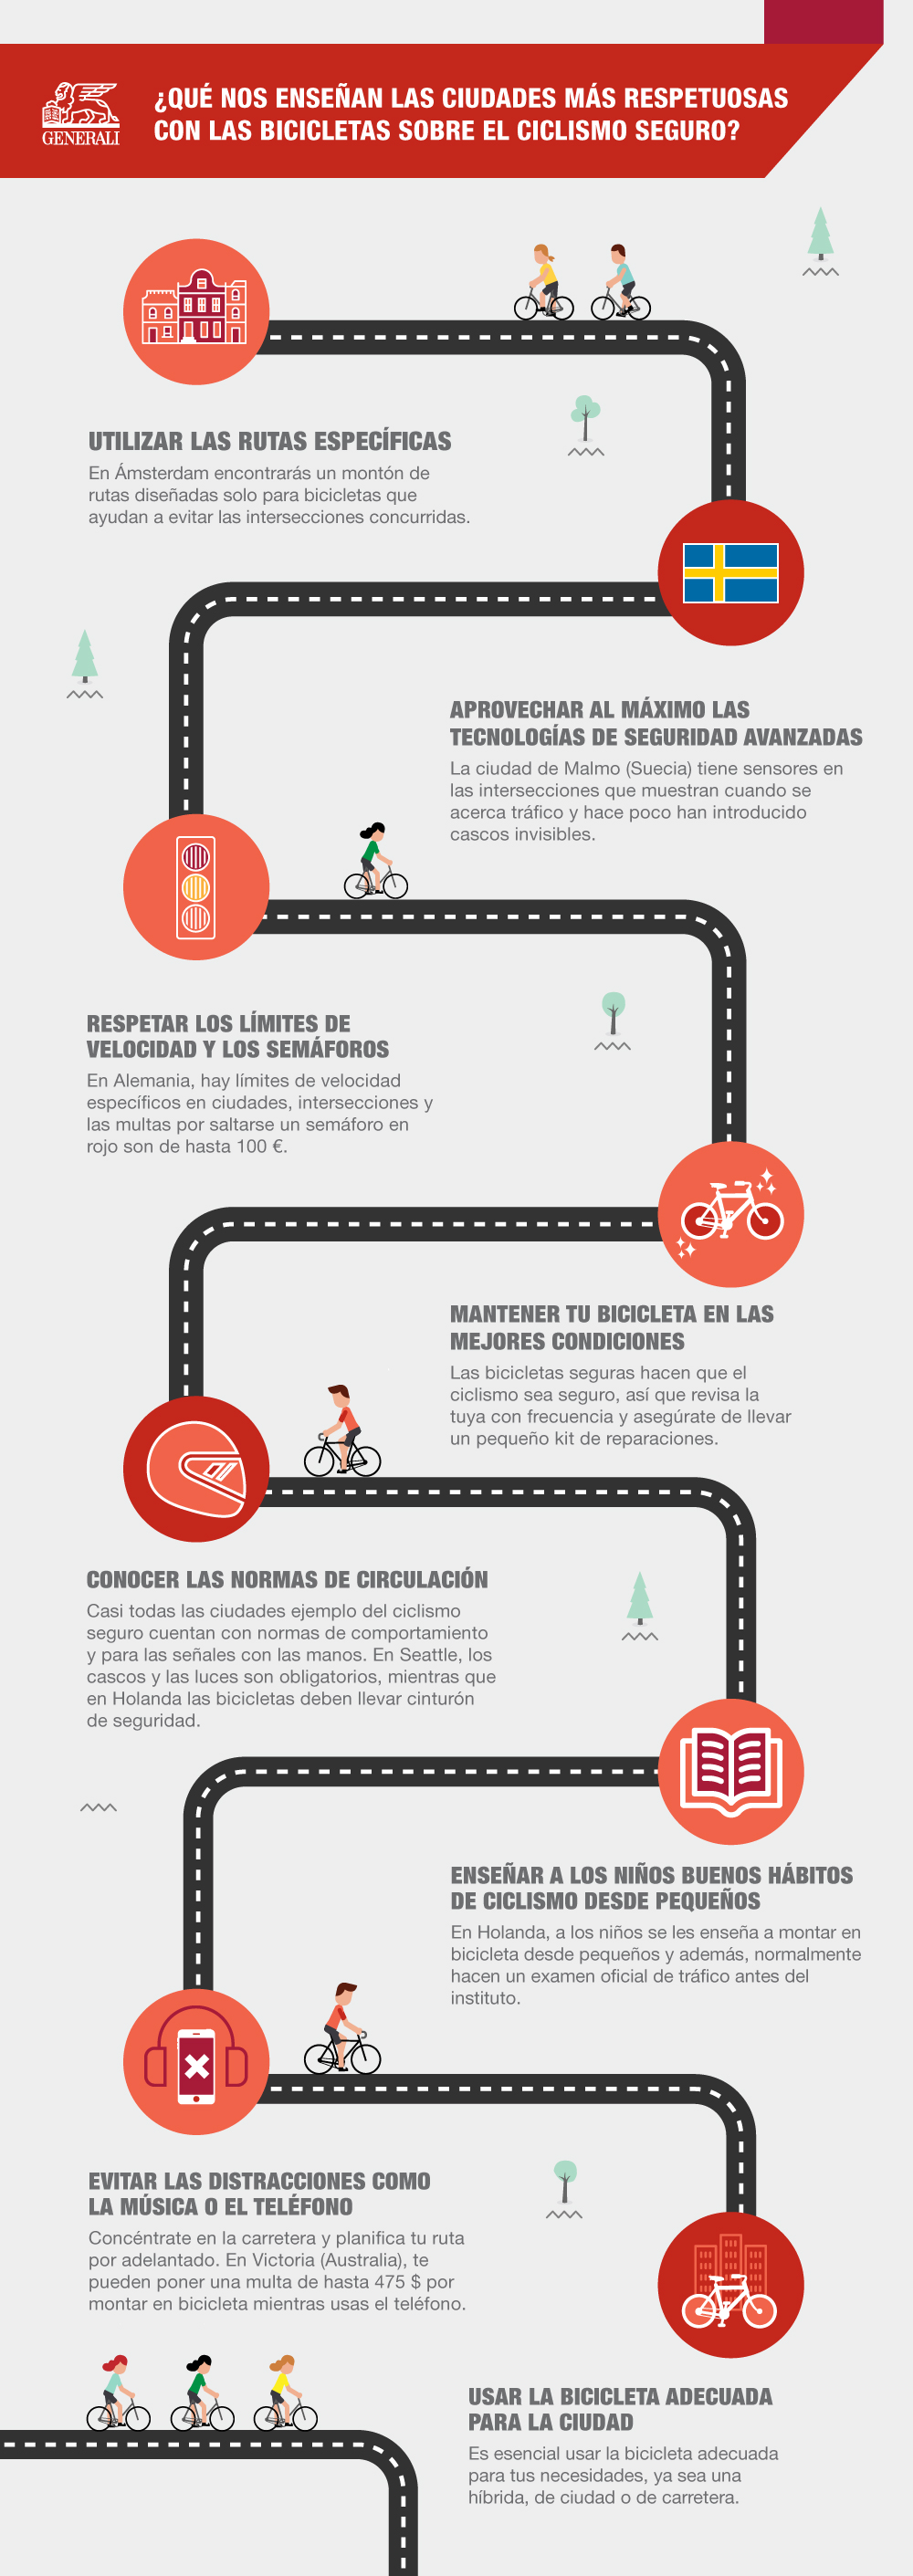 Generali_Biking_Infographic_Spanish_updated (1).jpg